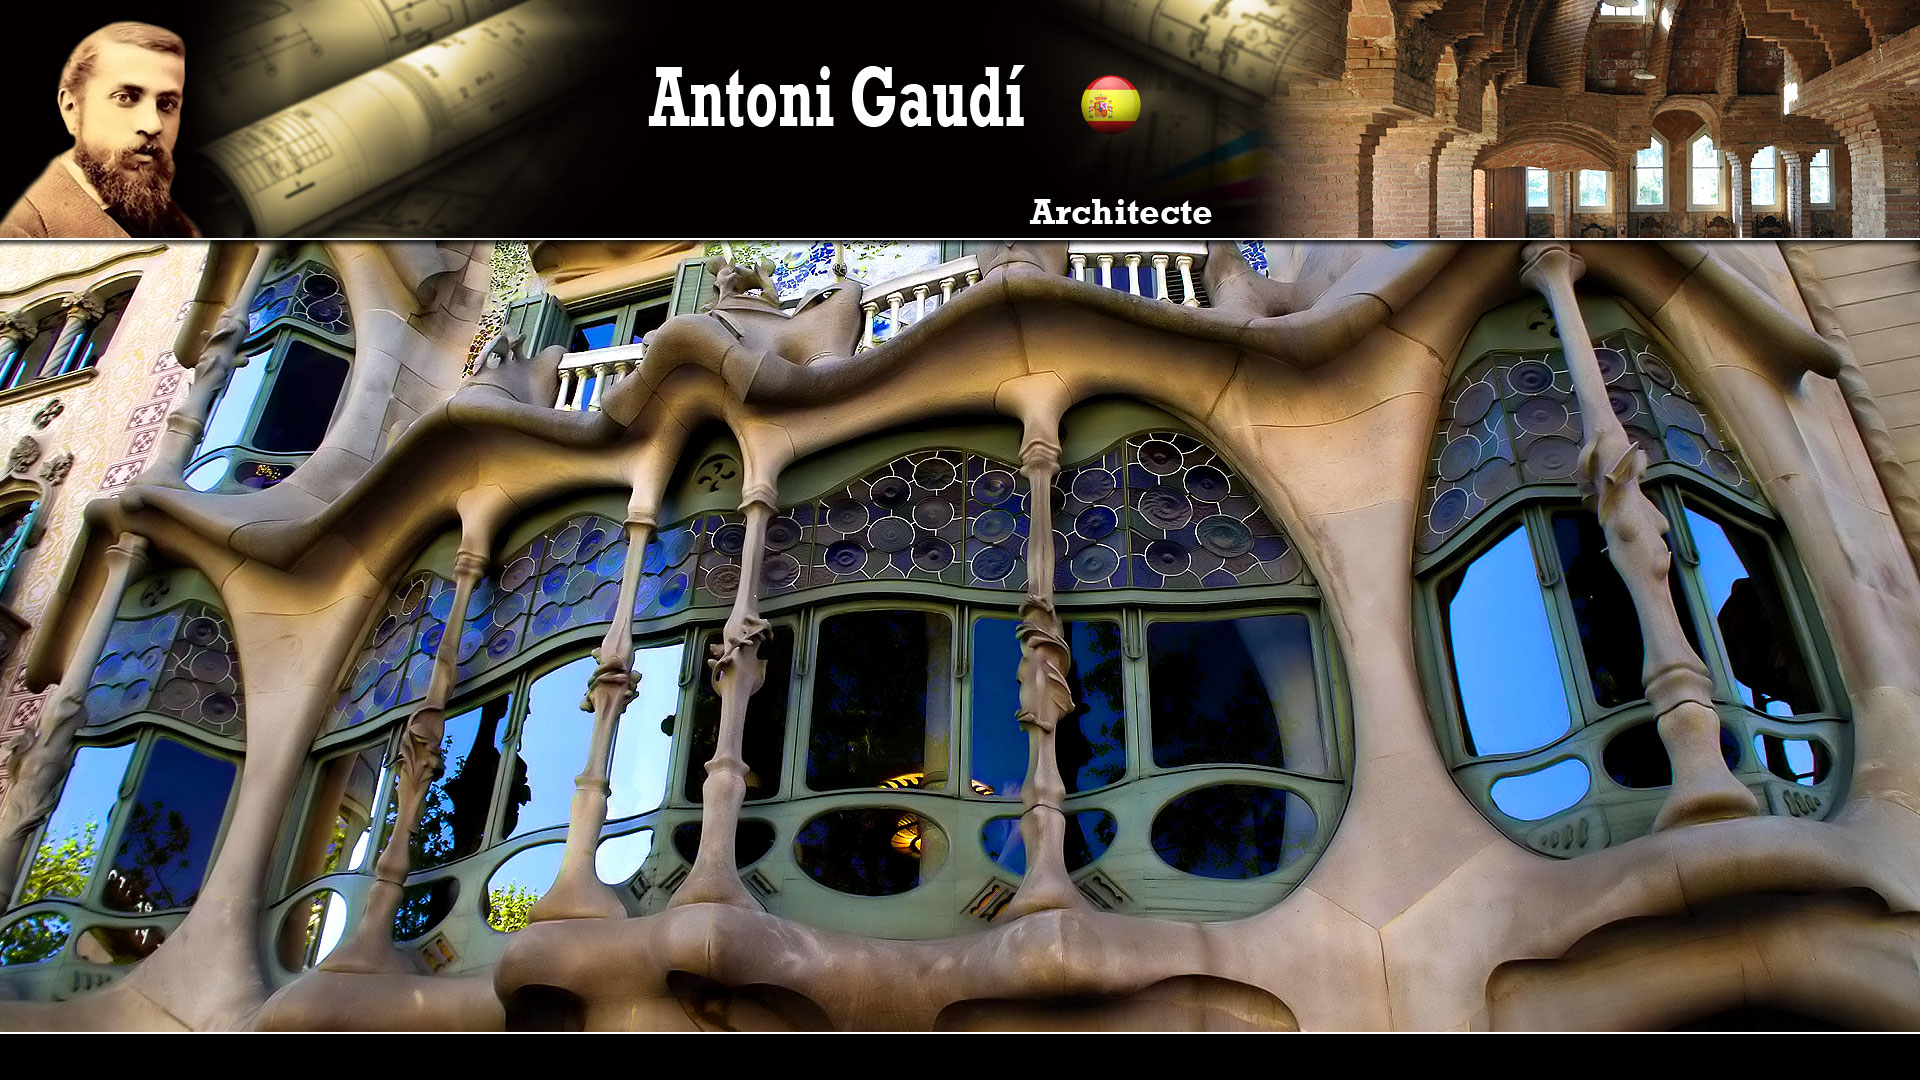 La Casa Batlló (Antoni Gaudí)